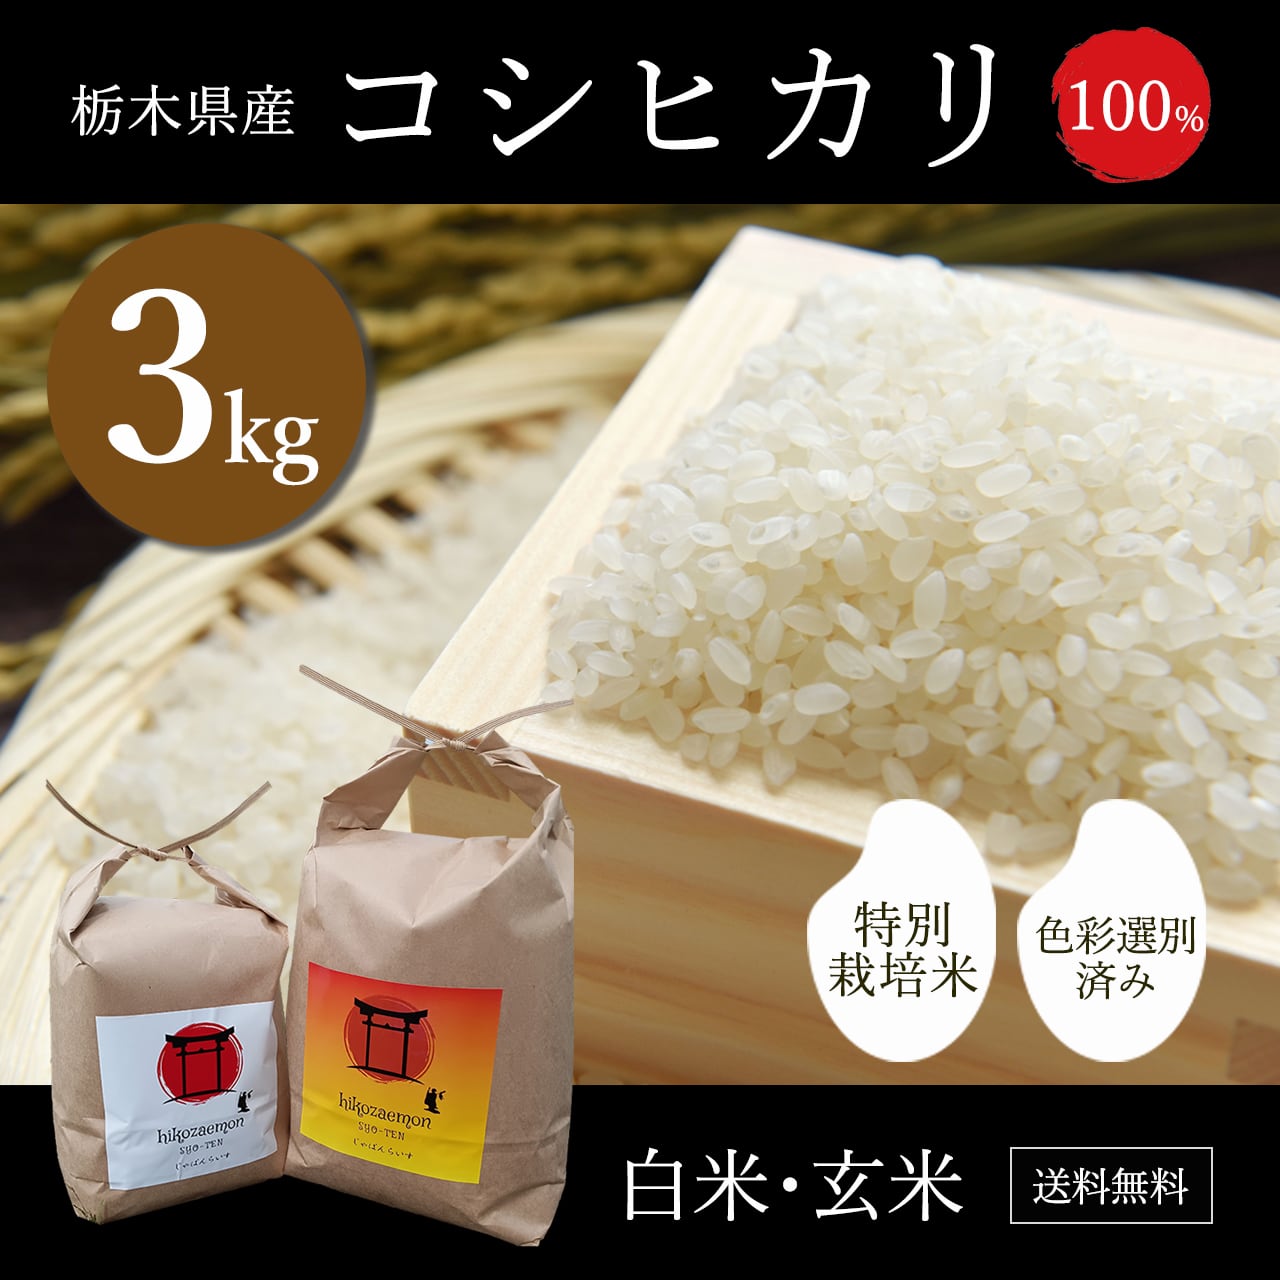 令和元年産 栃木県産コシヒカリ玄米(30キロ) - 米/穀物